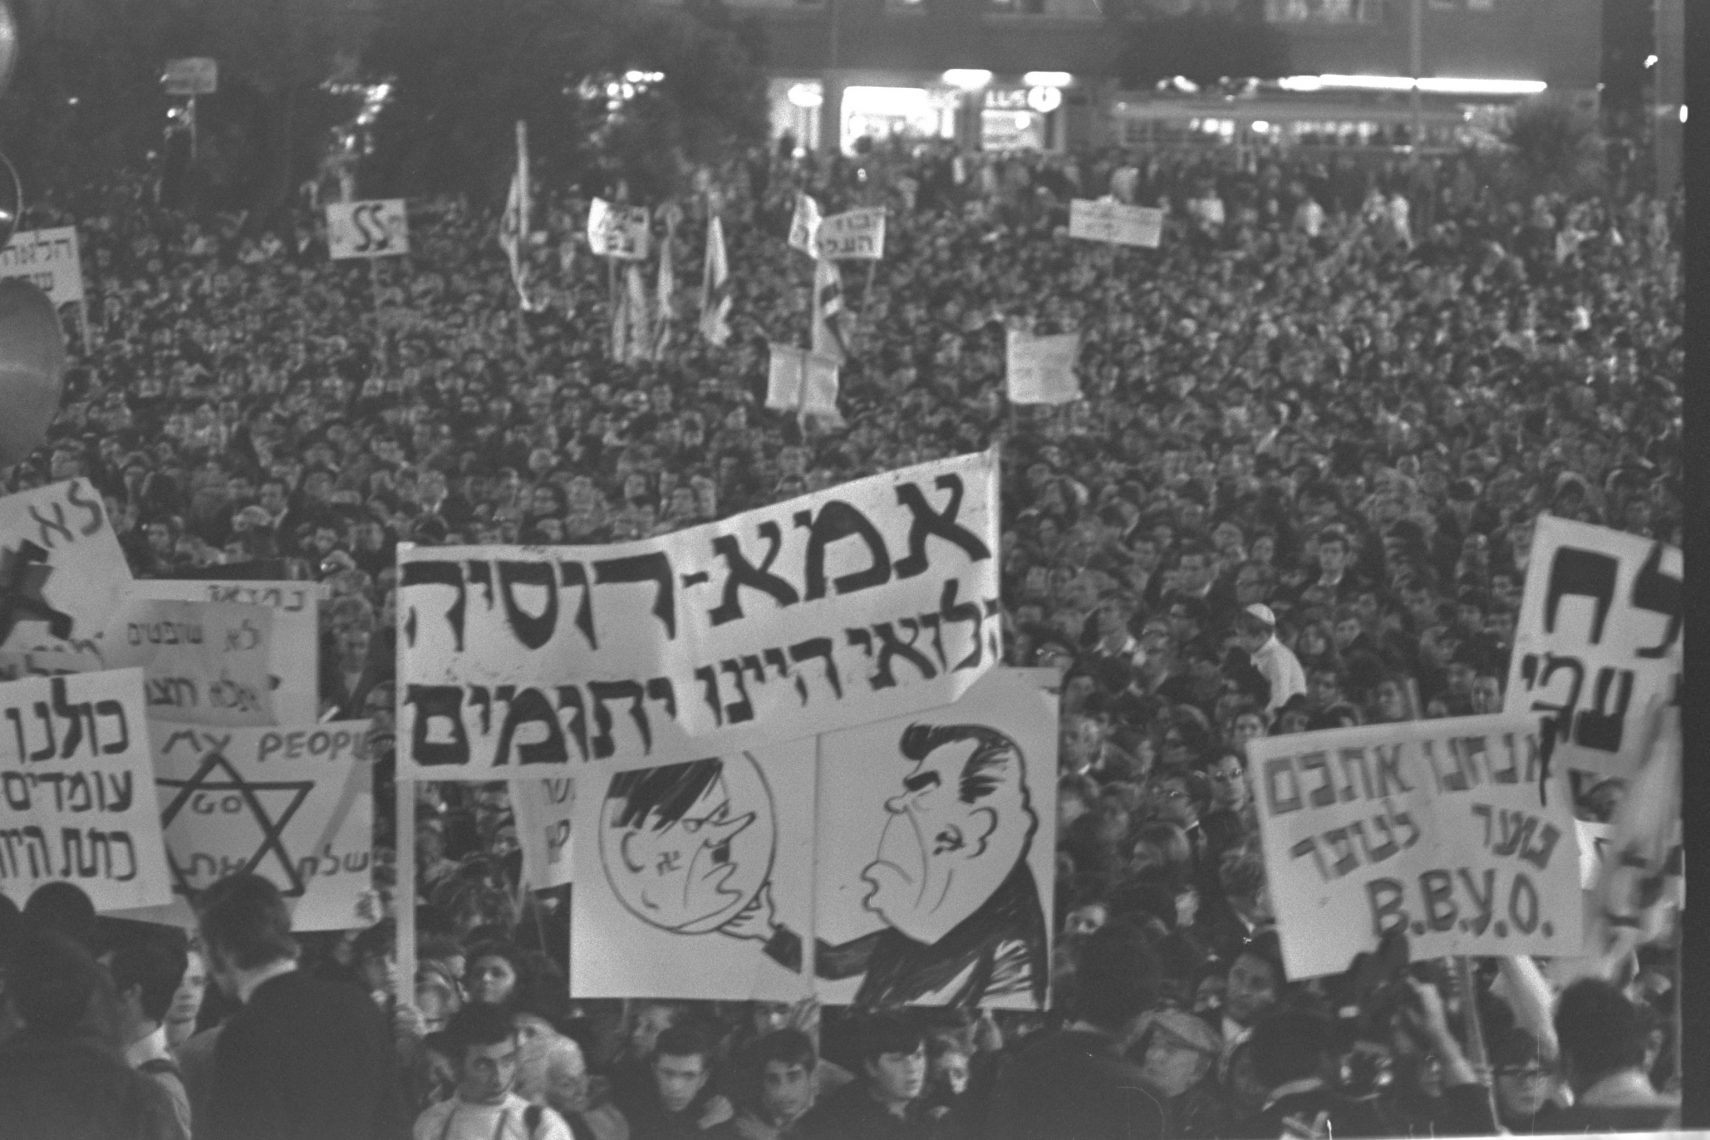 הפגנה בכיכר מלכי ישראל בתל אביב נגד משפטי לנינגארד (צילום: משה מילנר, לשכת העיתונות הממשלתית)